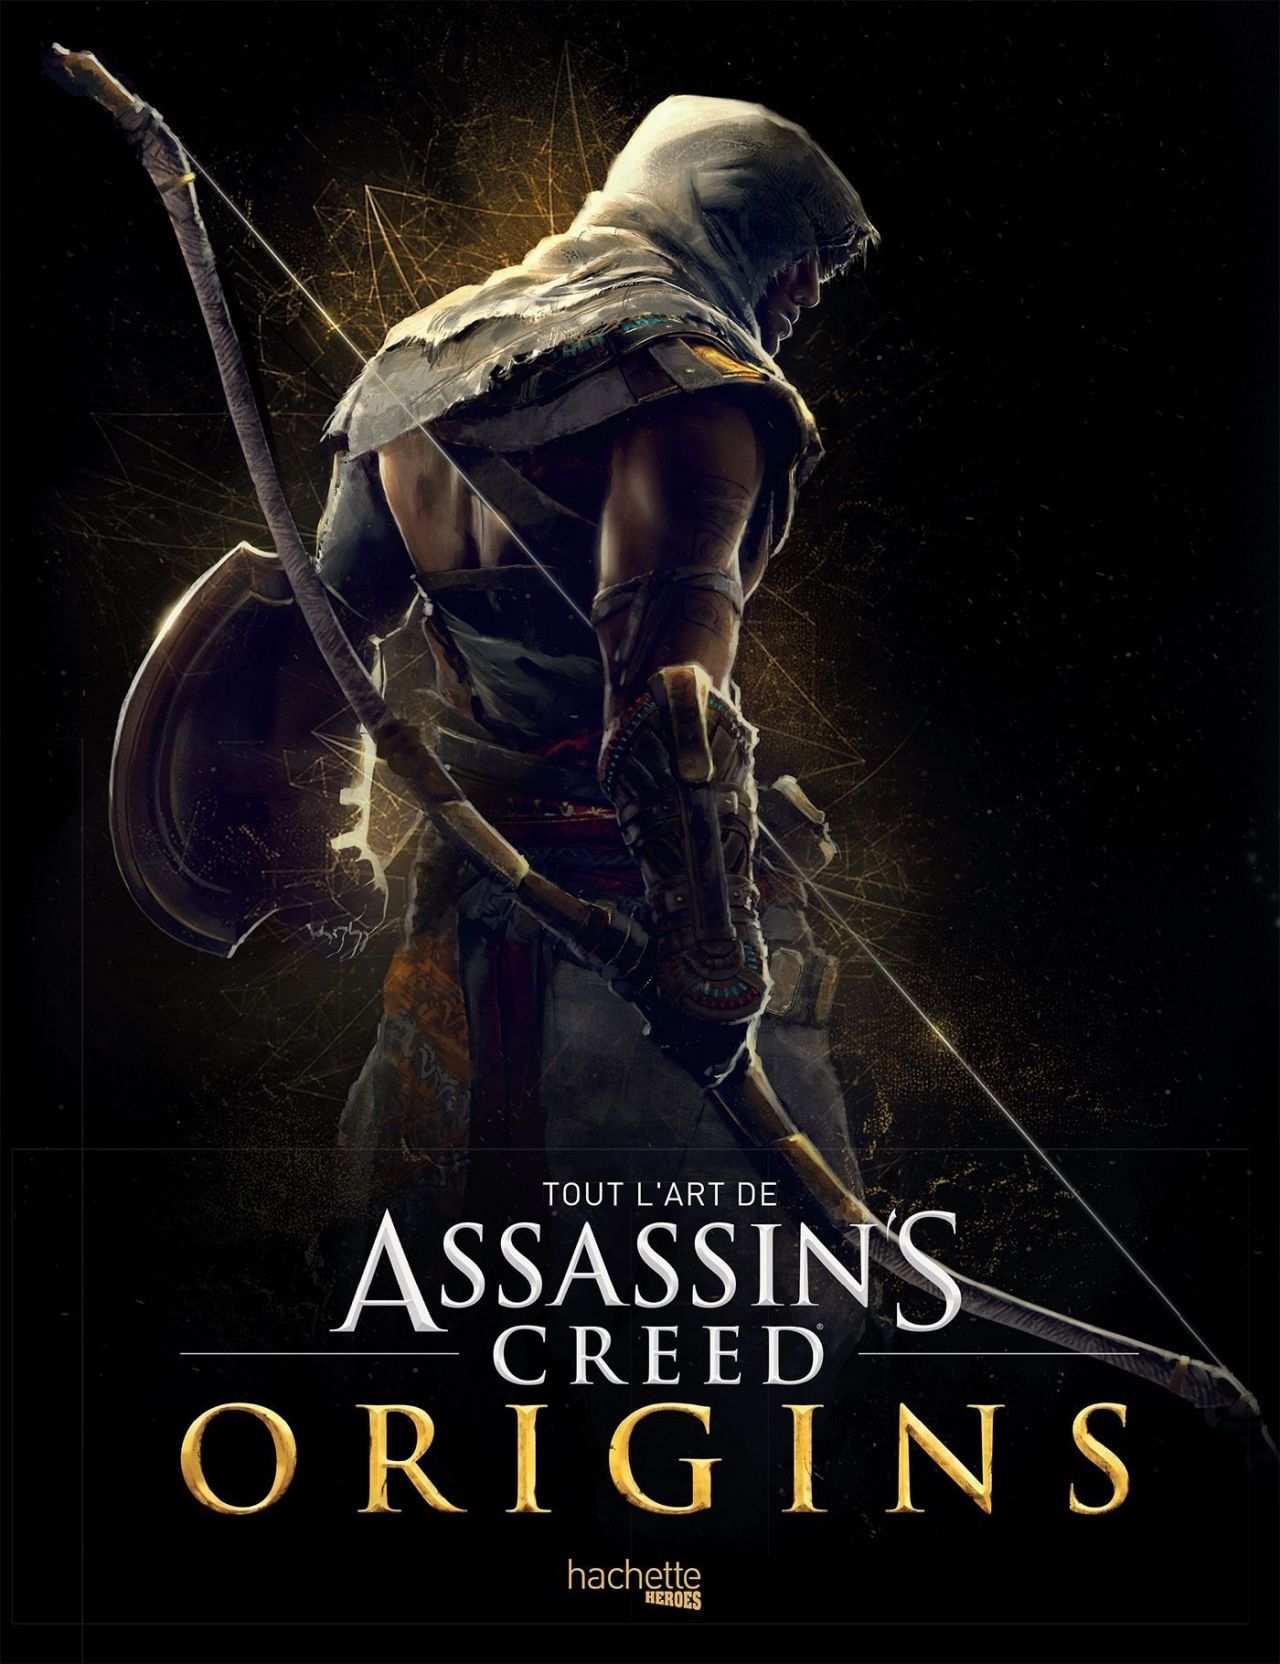 Tout l'art de Assasin's Creed Origin's : un superbe artbook sur l'univers graphique du jeu